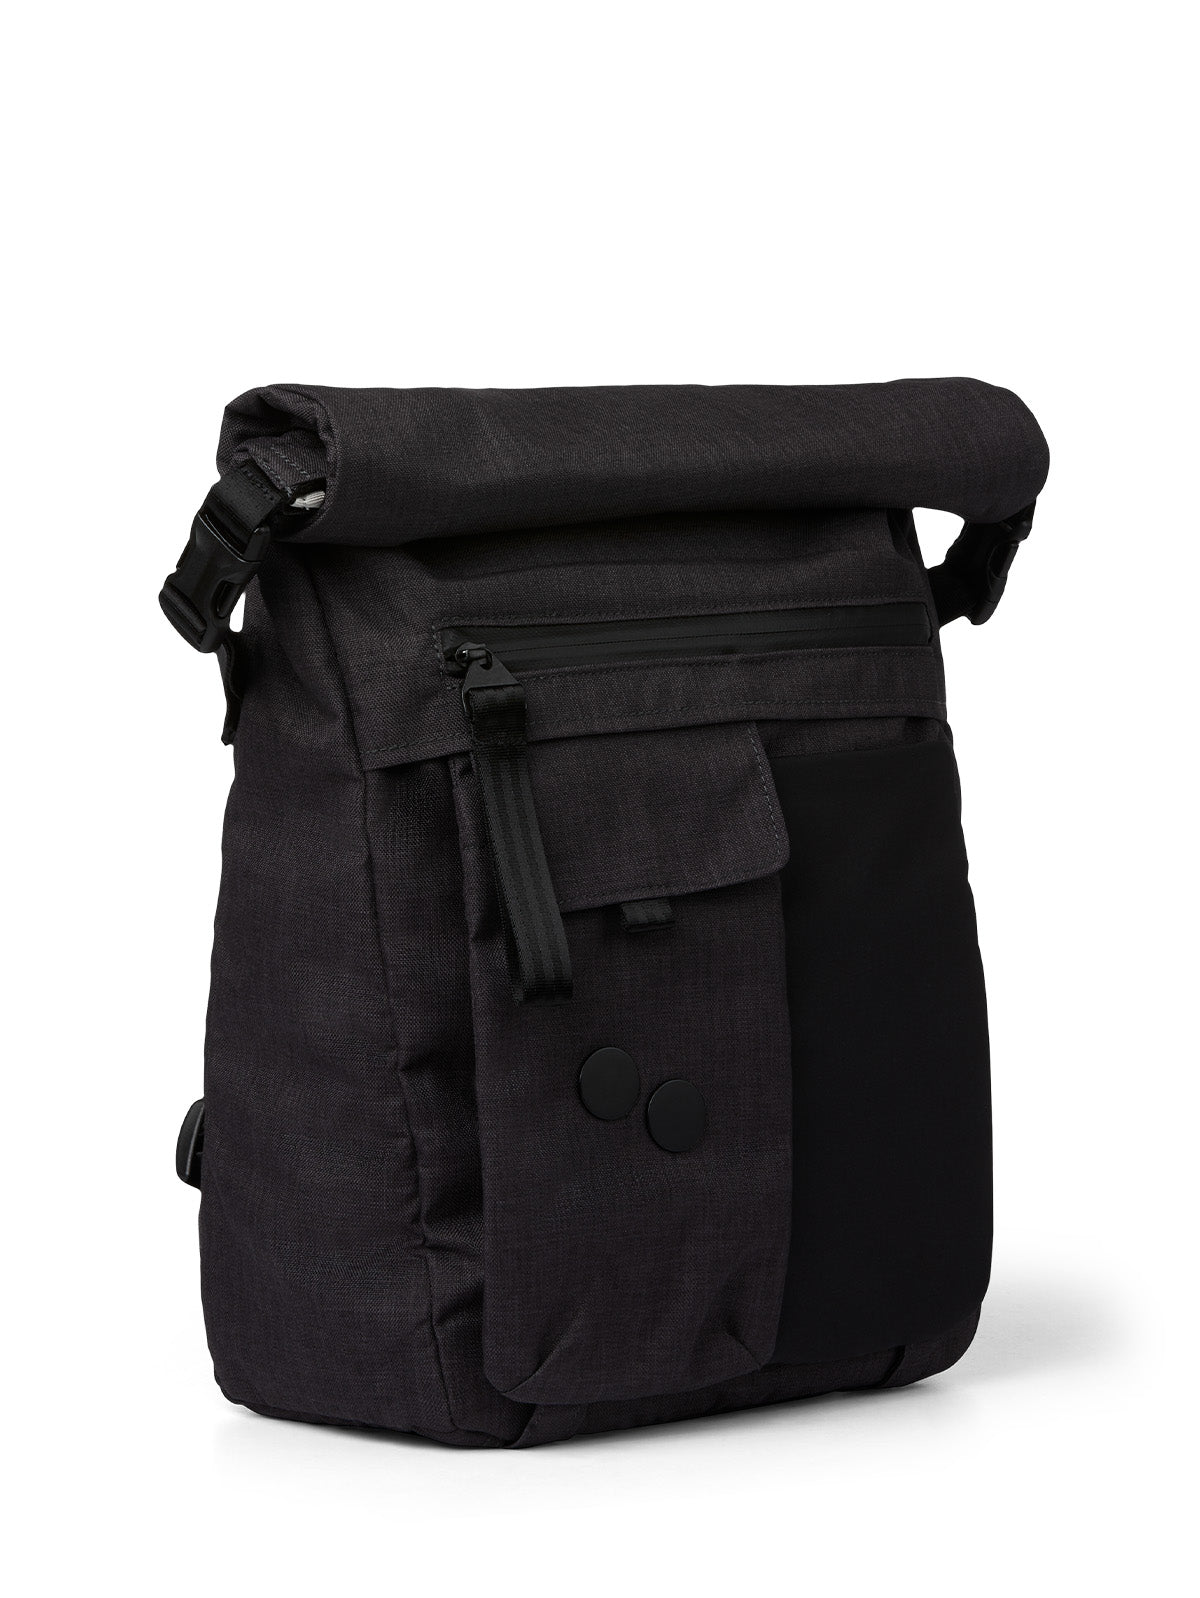 pinqponq-backpack-Carrik-Anthracite-Melange-front